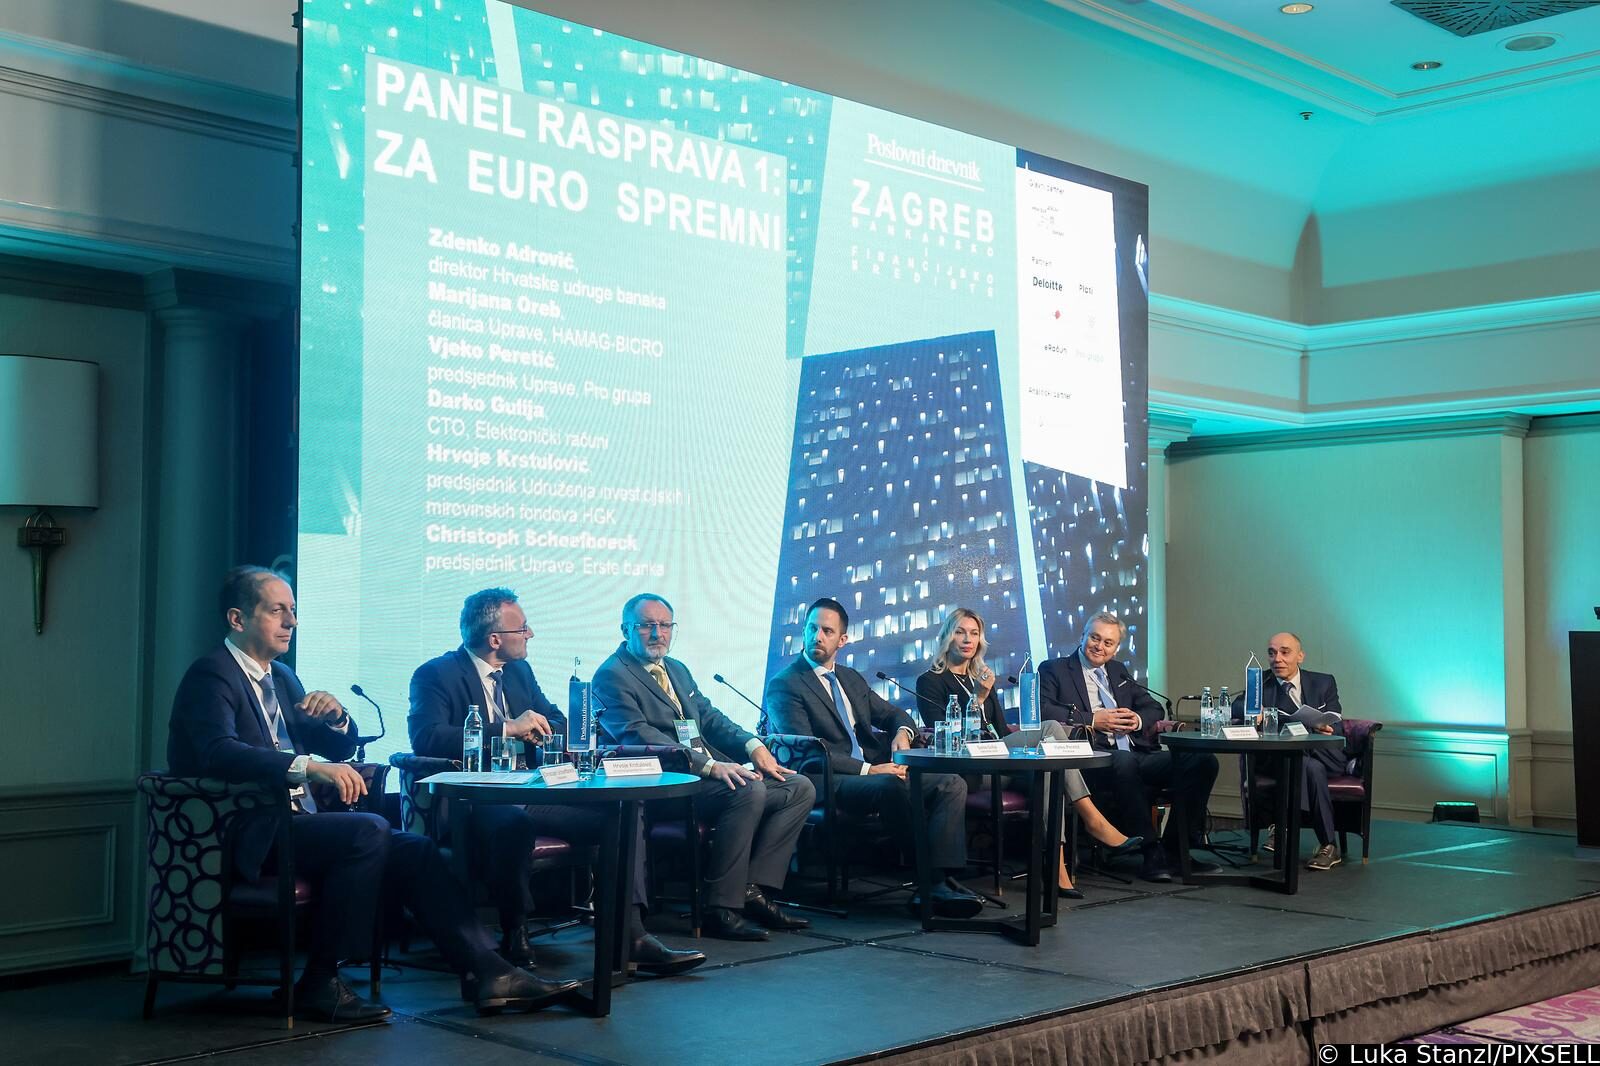 Zagreb: Konferencija Poslovnog dnevnika “Zagreb – bankarsko i financijsko središte”, panel rasprava: Za euro spremni